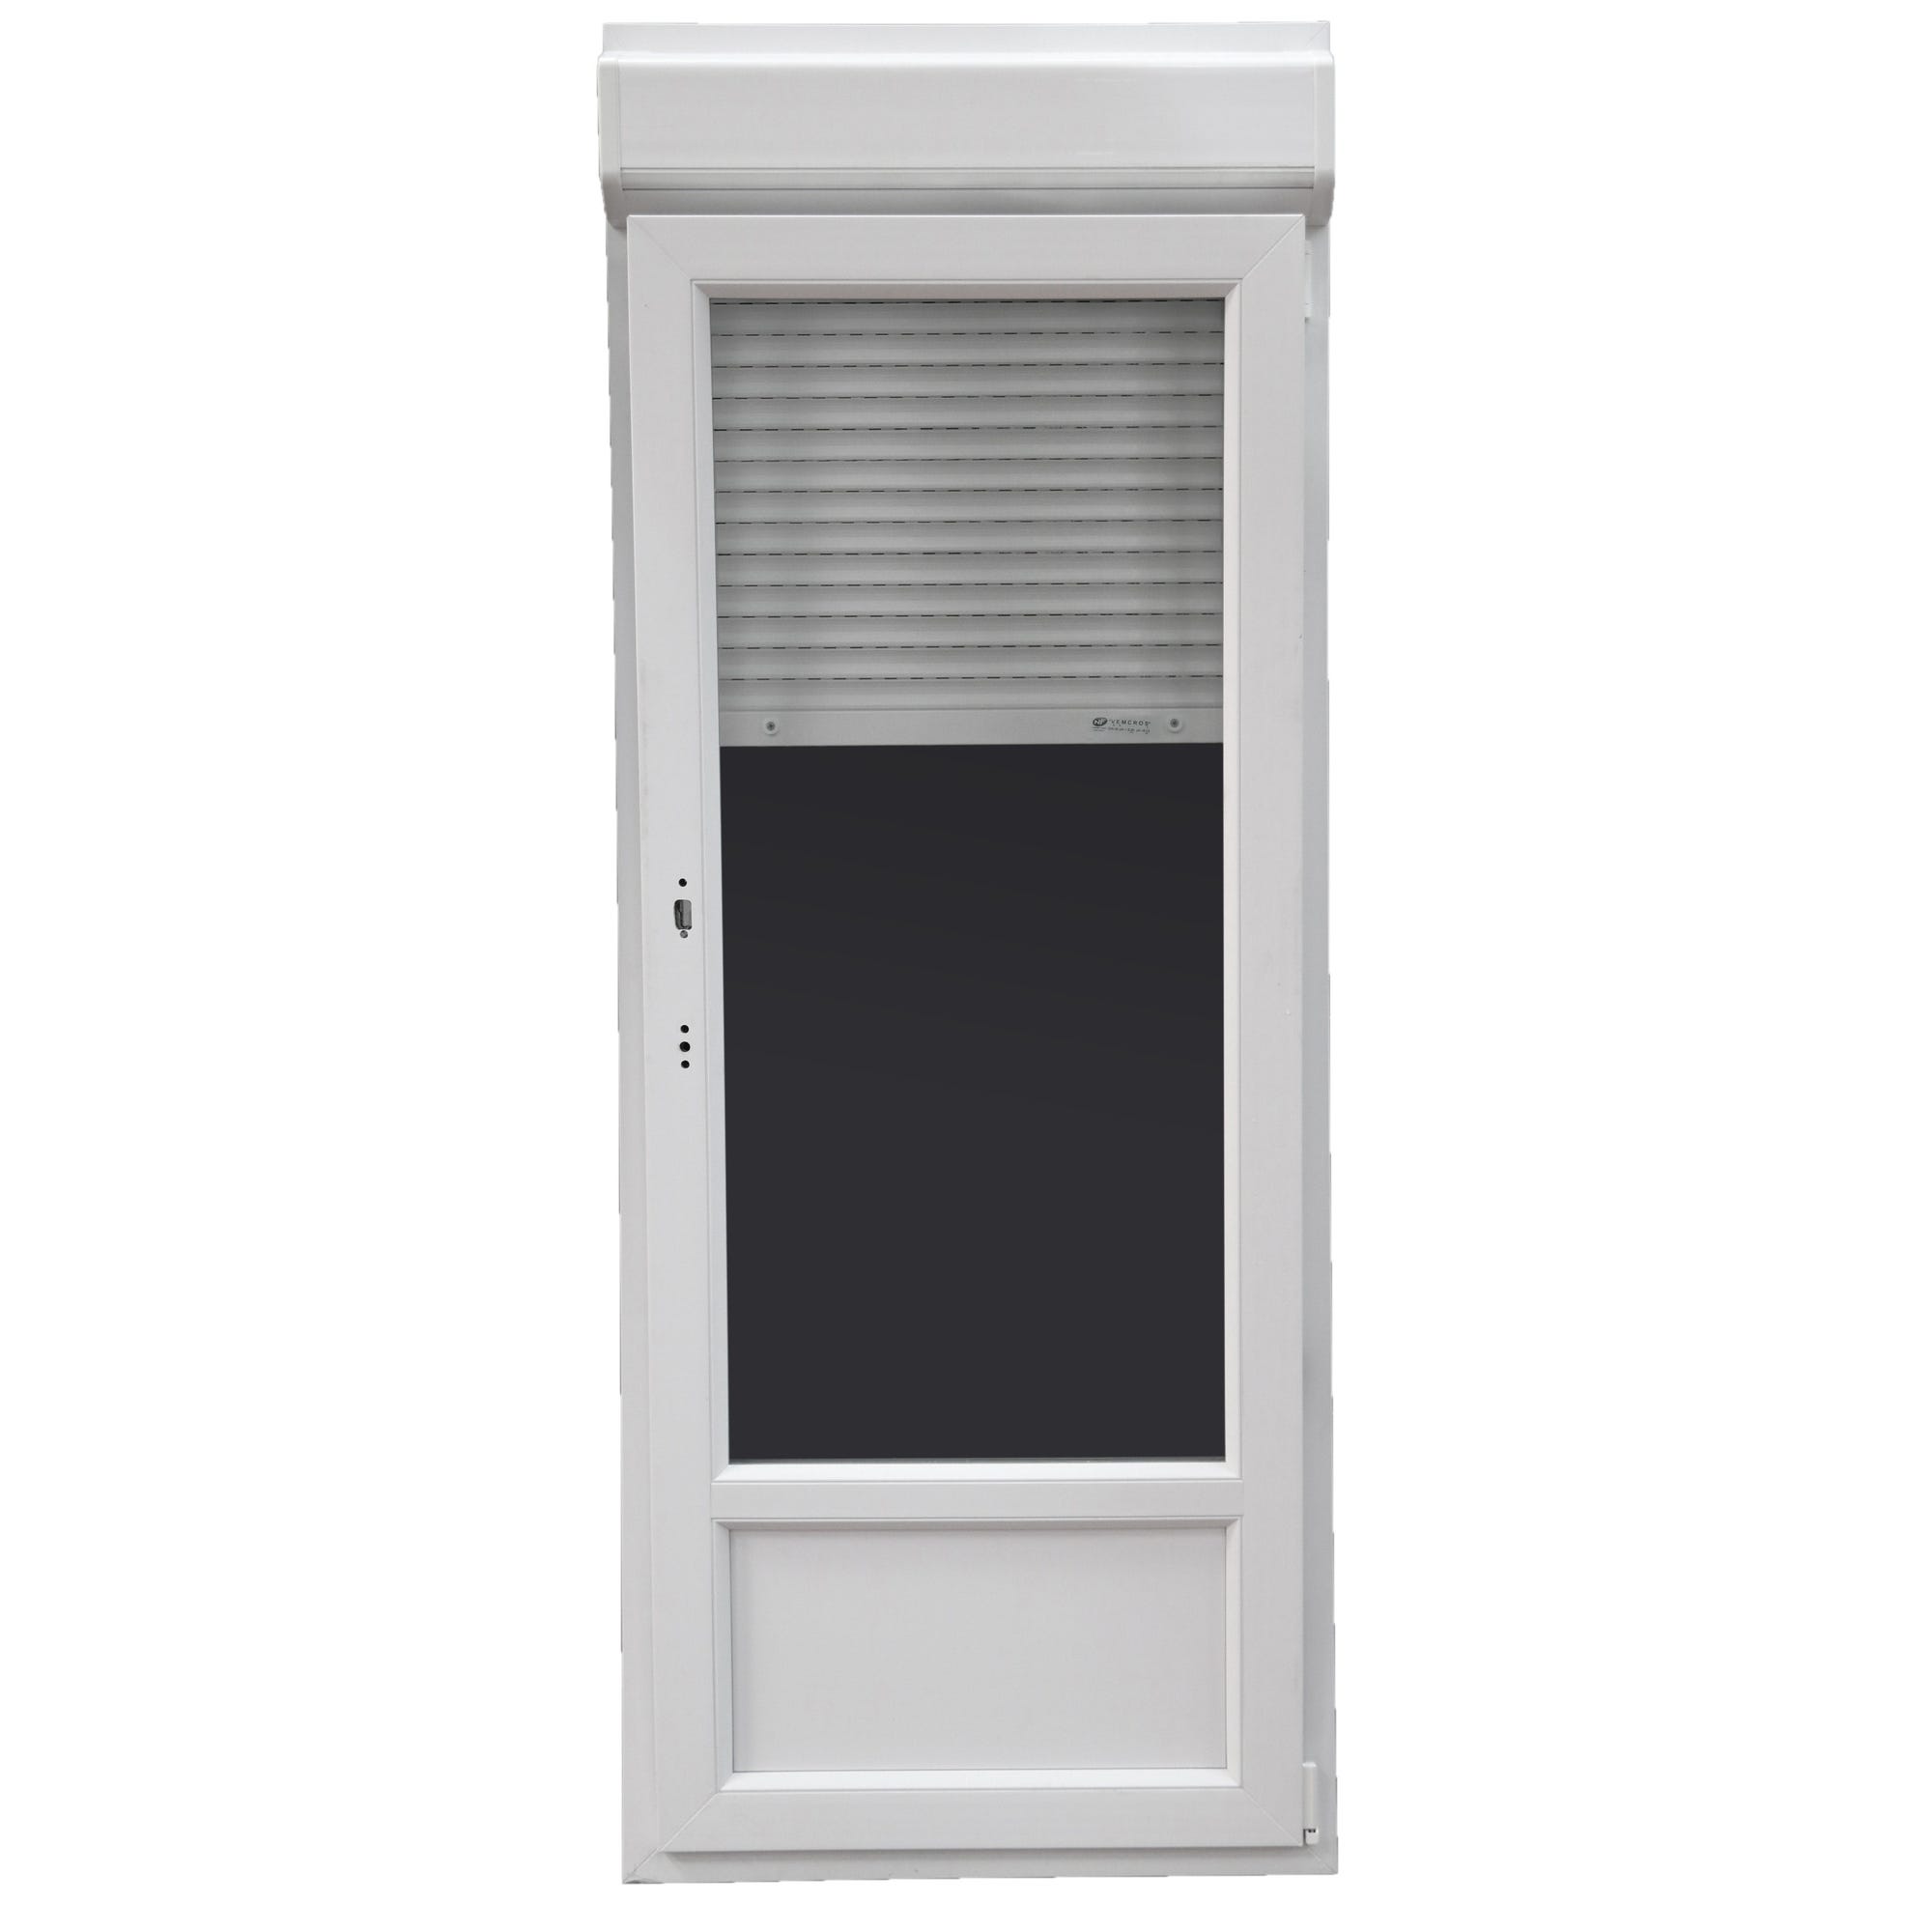 Porte-fenêtre PVC H.205 x l.80 cm oscillo-battant 1 vantail tirant droit avec volet roulant intégré blanc 2